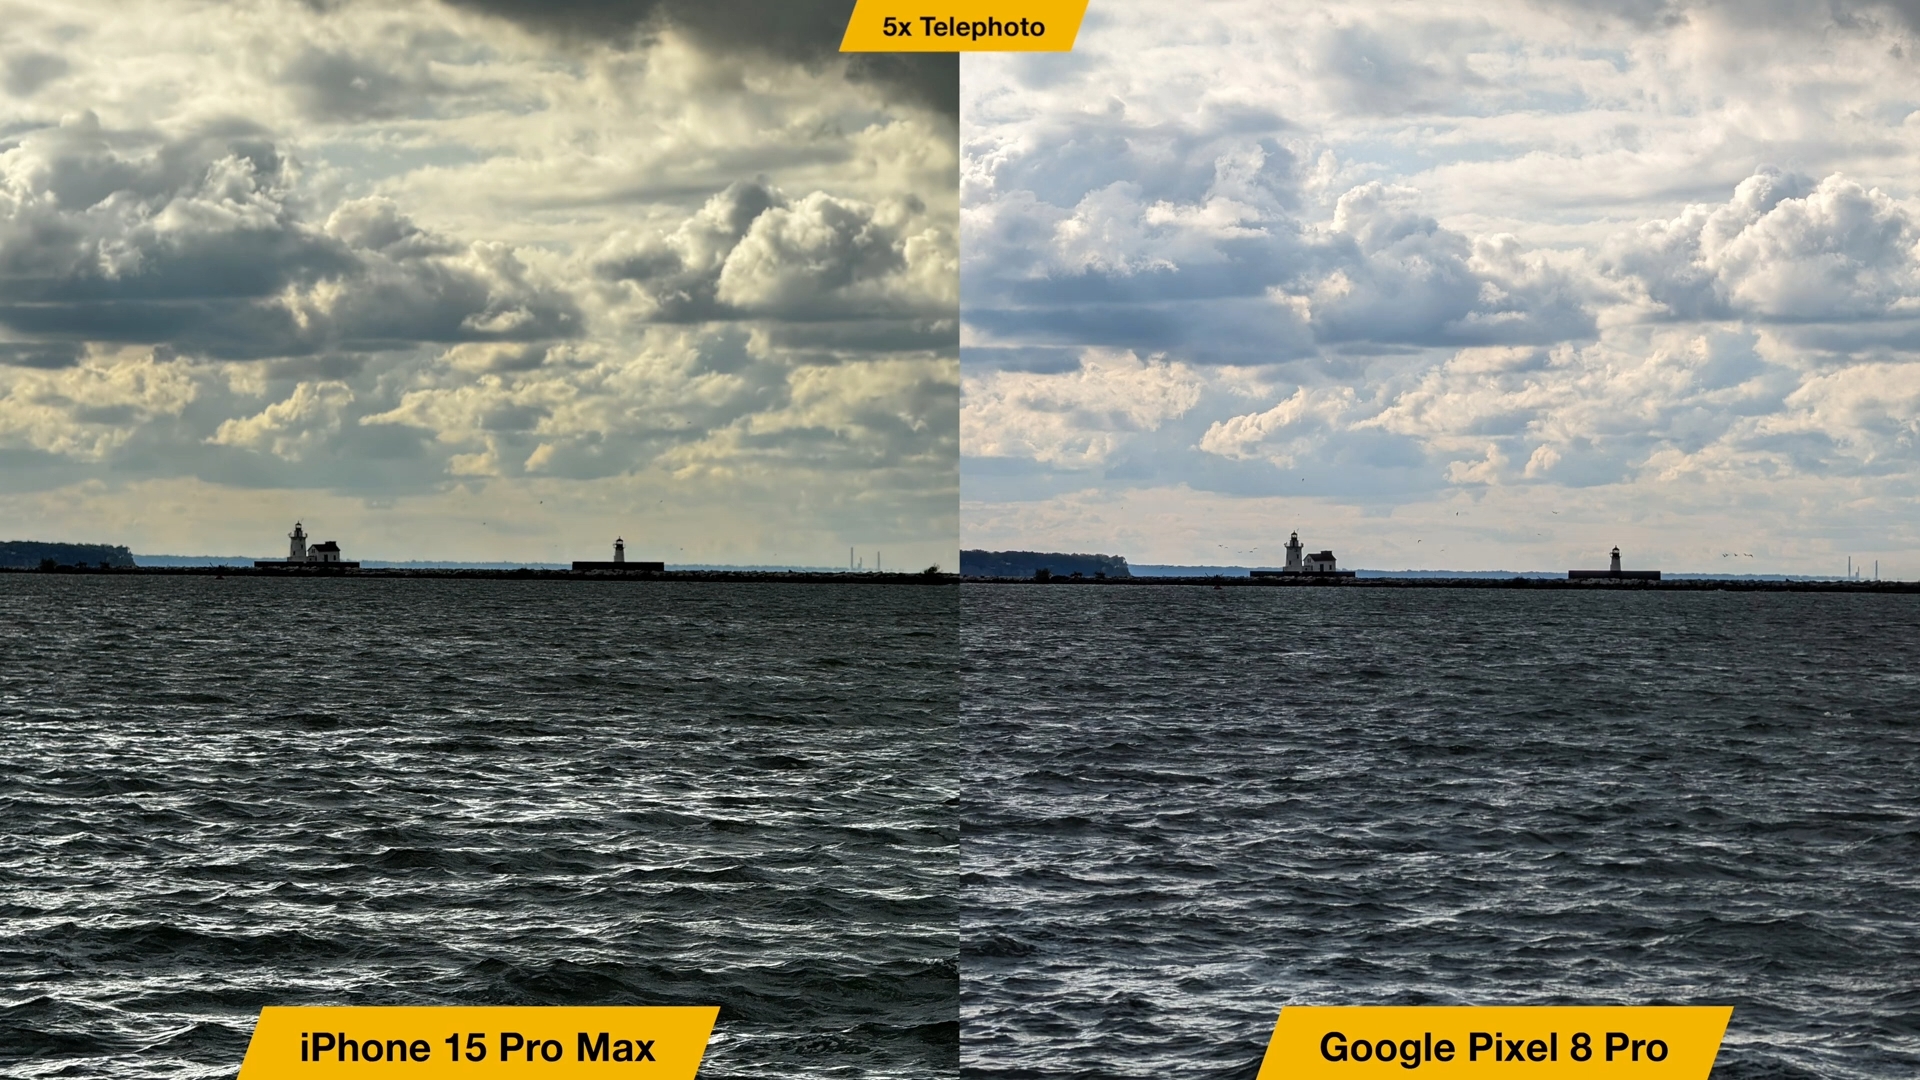 iPhoneIslam.com'dan, Google Pixel XL Pro ile iPhone 15 Pro Max arasındaki karşılaştırma.